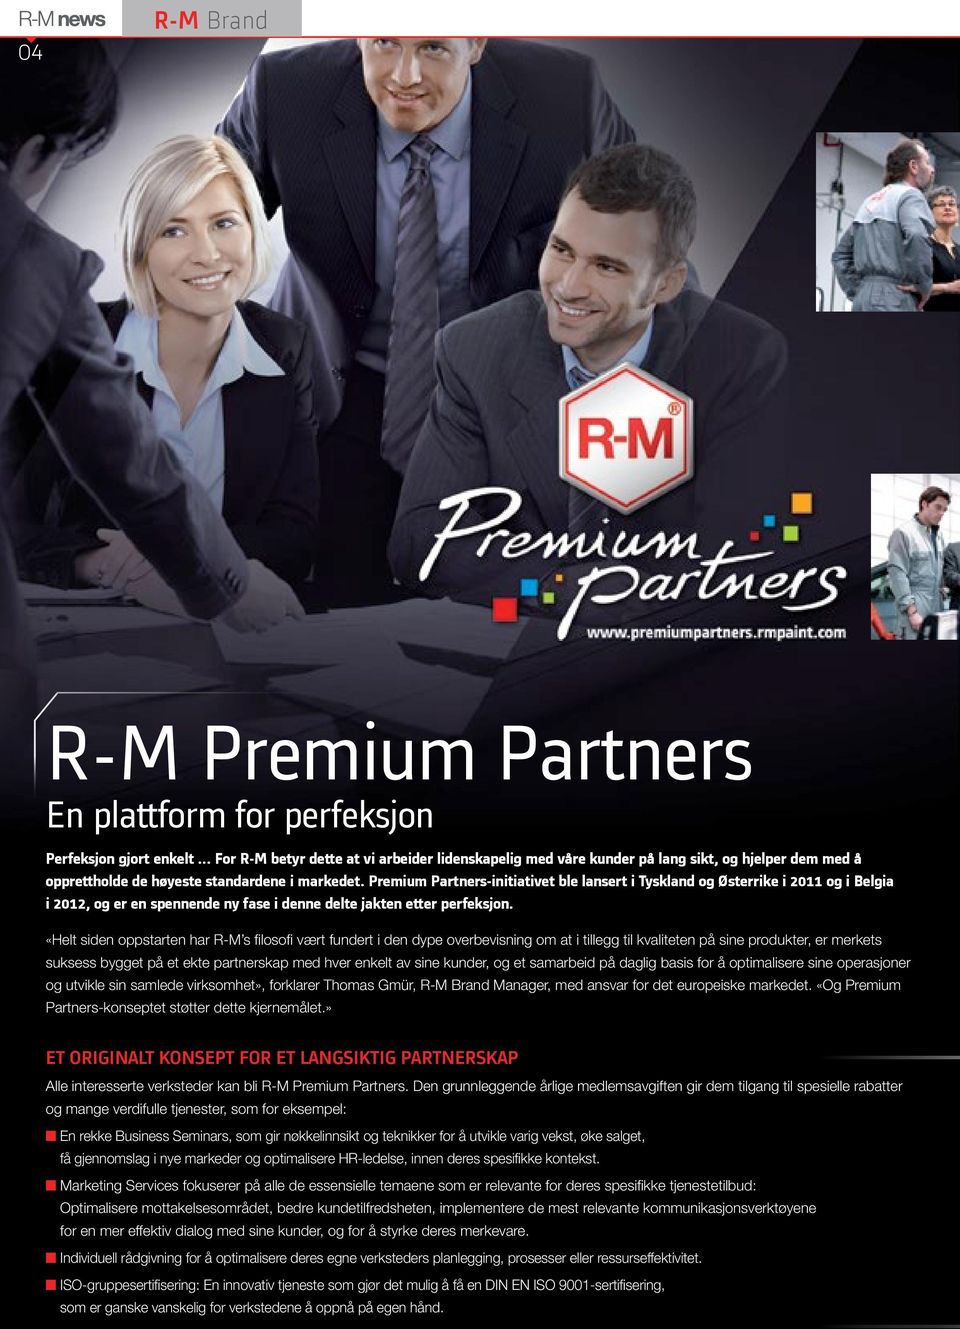 Premium Partners-initiativet ble lansert i Tyskland og Østerrike i 2011 og i Belgia i 2012, og er en spennende ny fase i denne delte jakten etter perfeksjon.